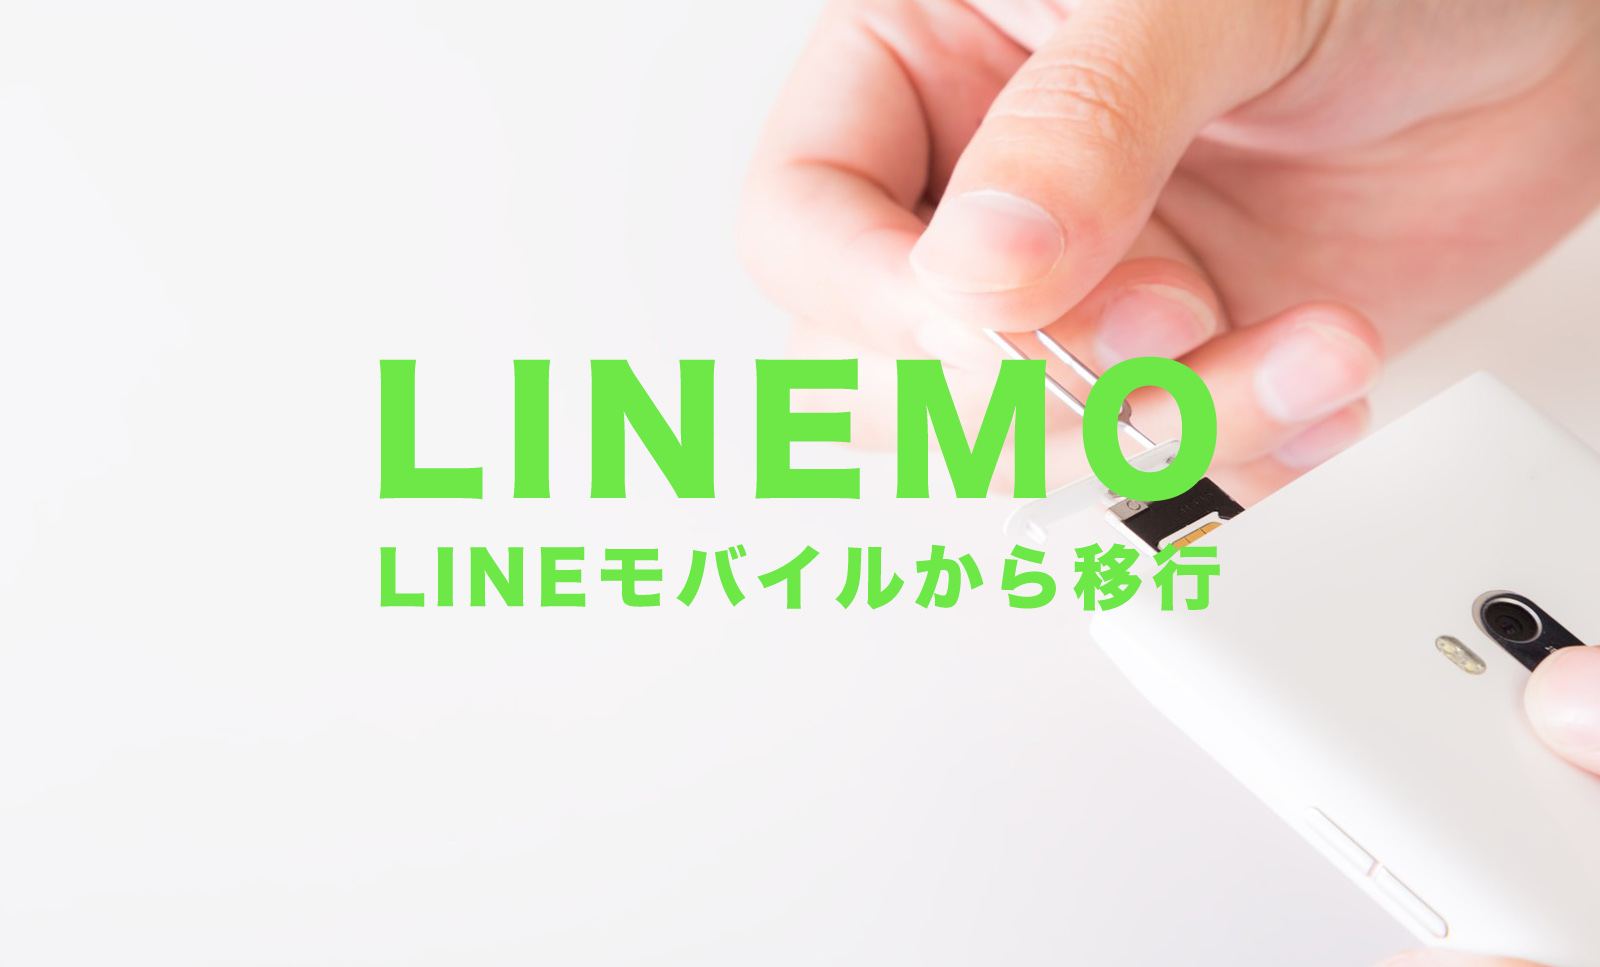 LINEモバイルからLINEMO(ラインモ)に移行するメリットとデメリットを解説のサムネイル画像